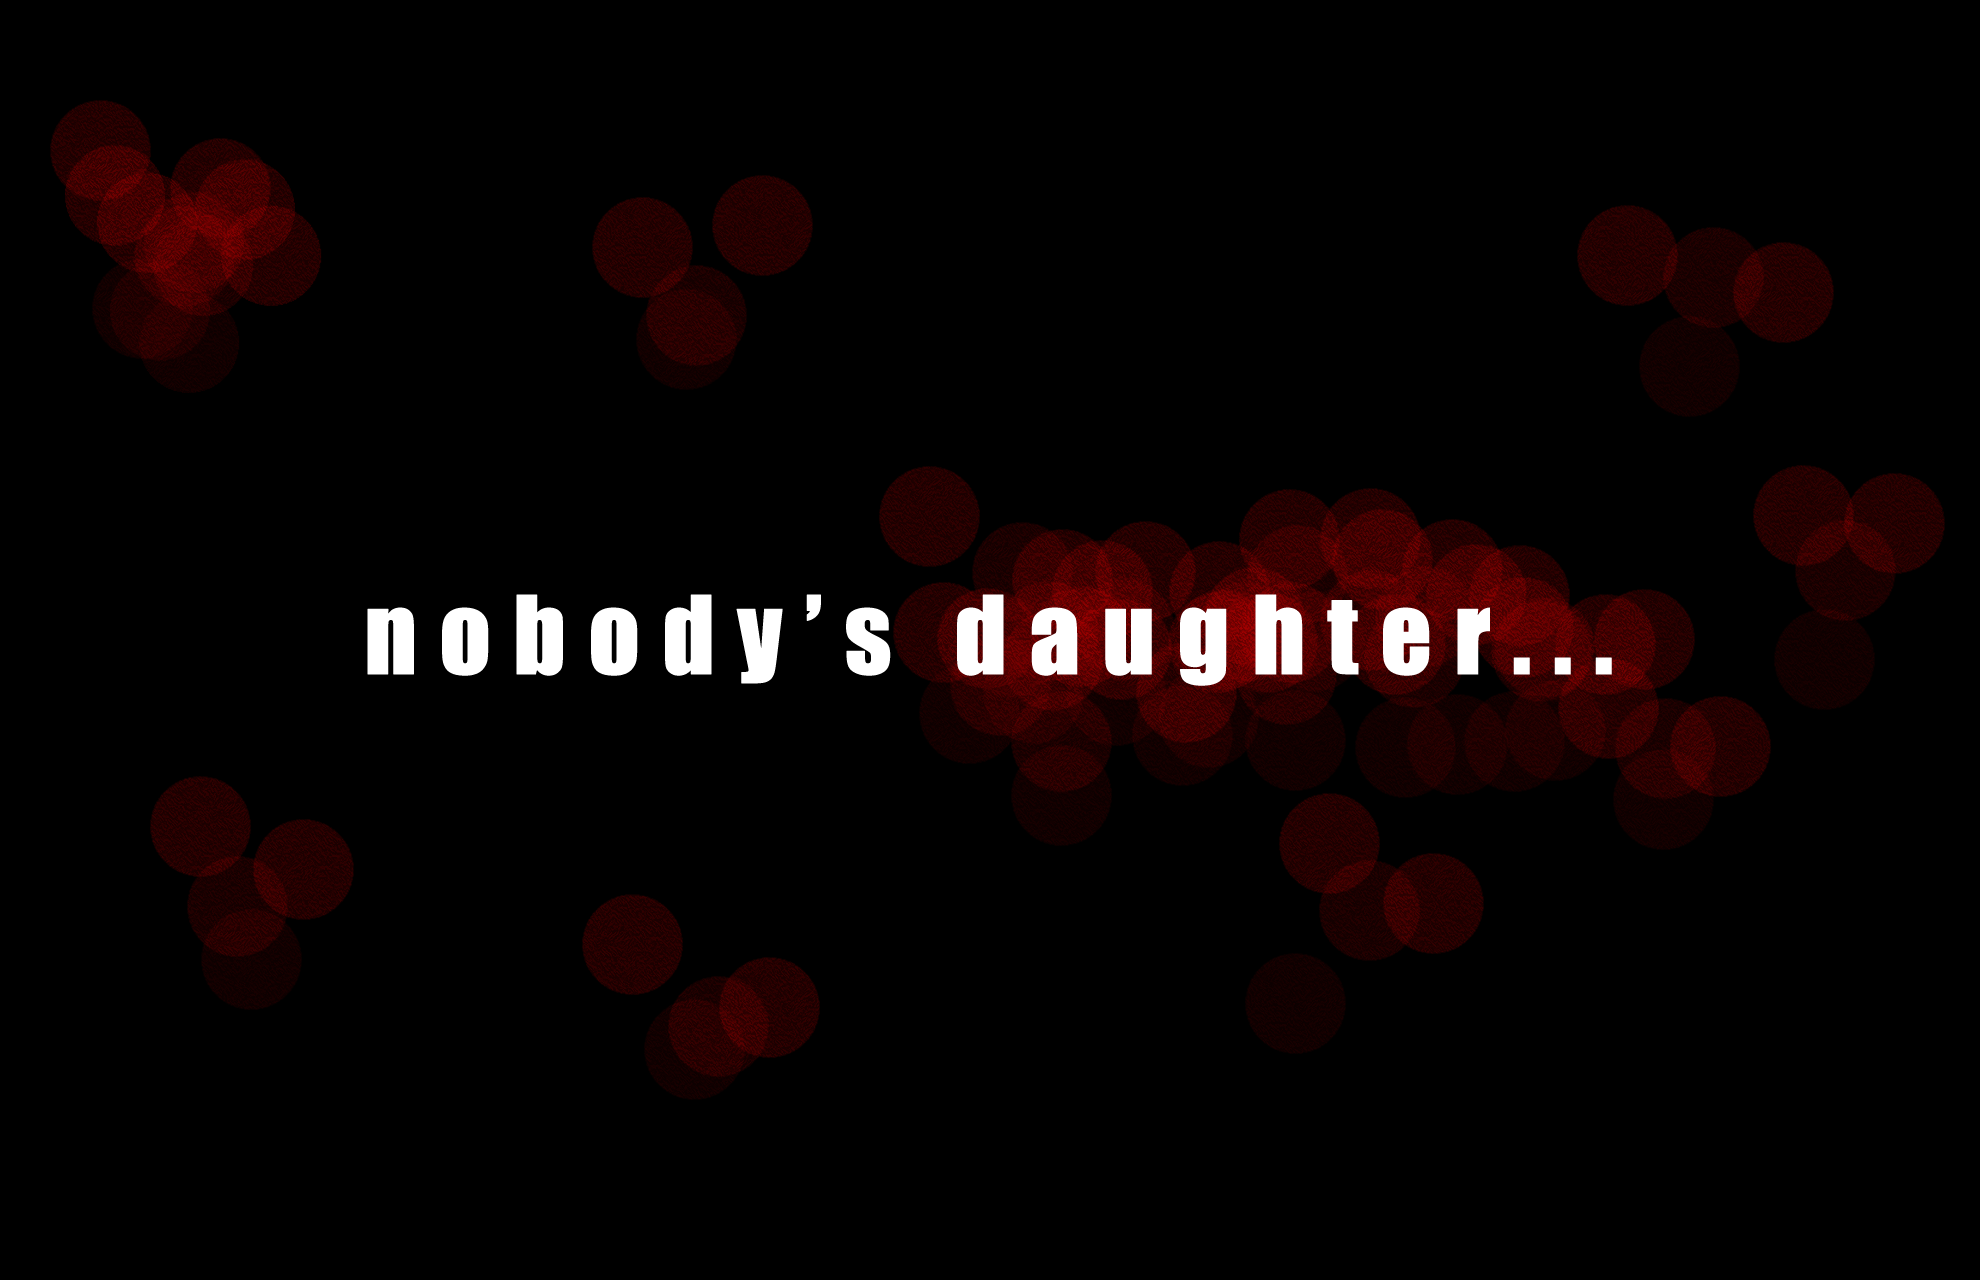 NobodysDaughter-1